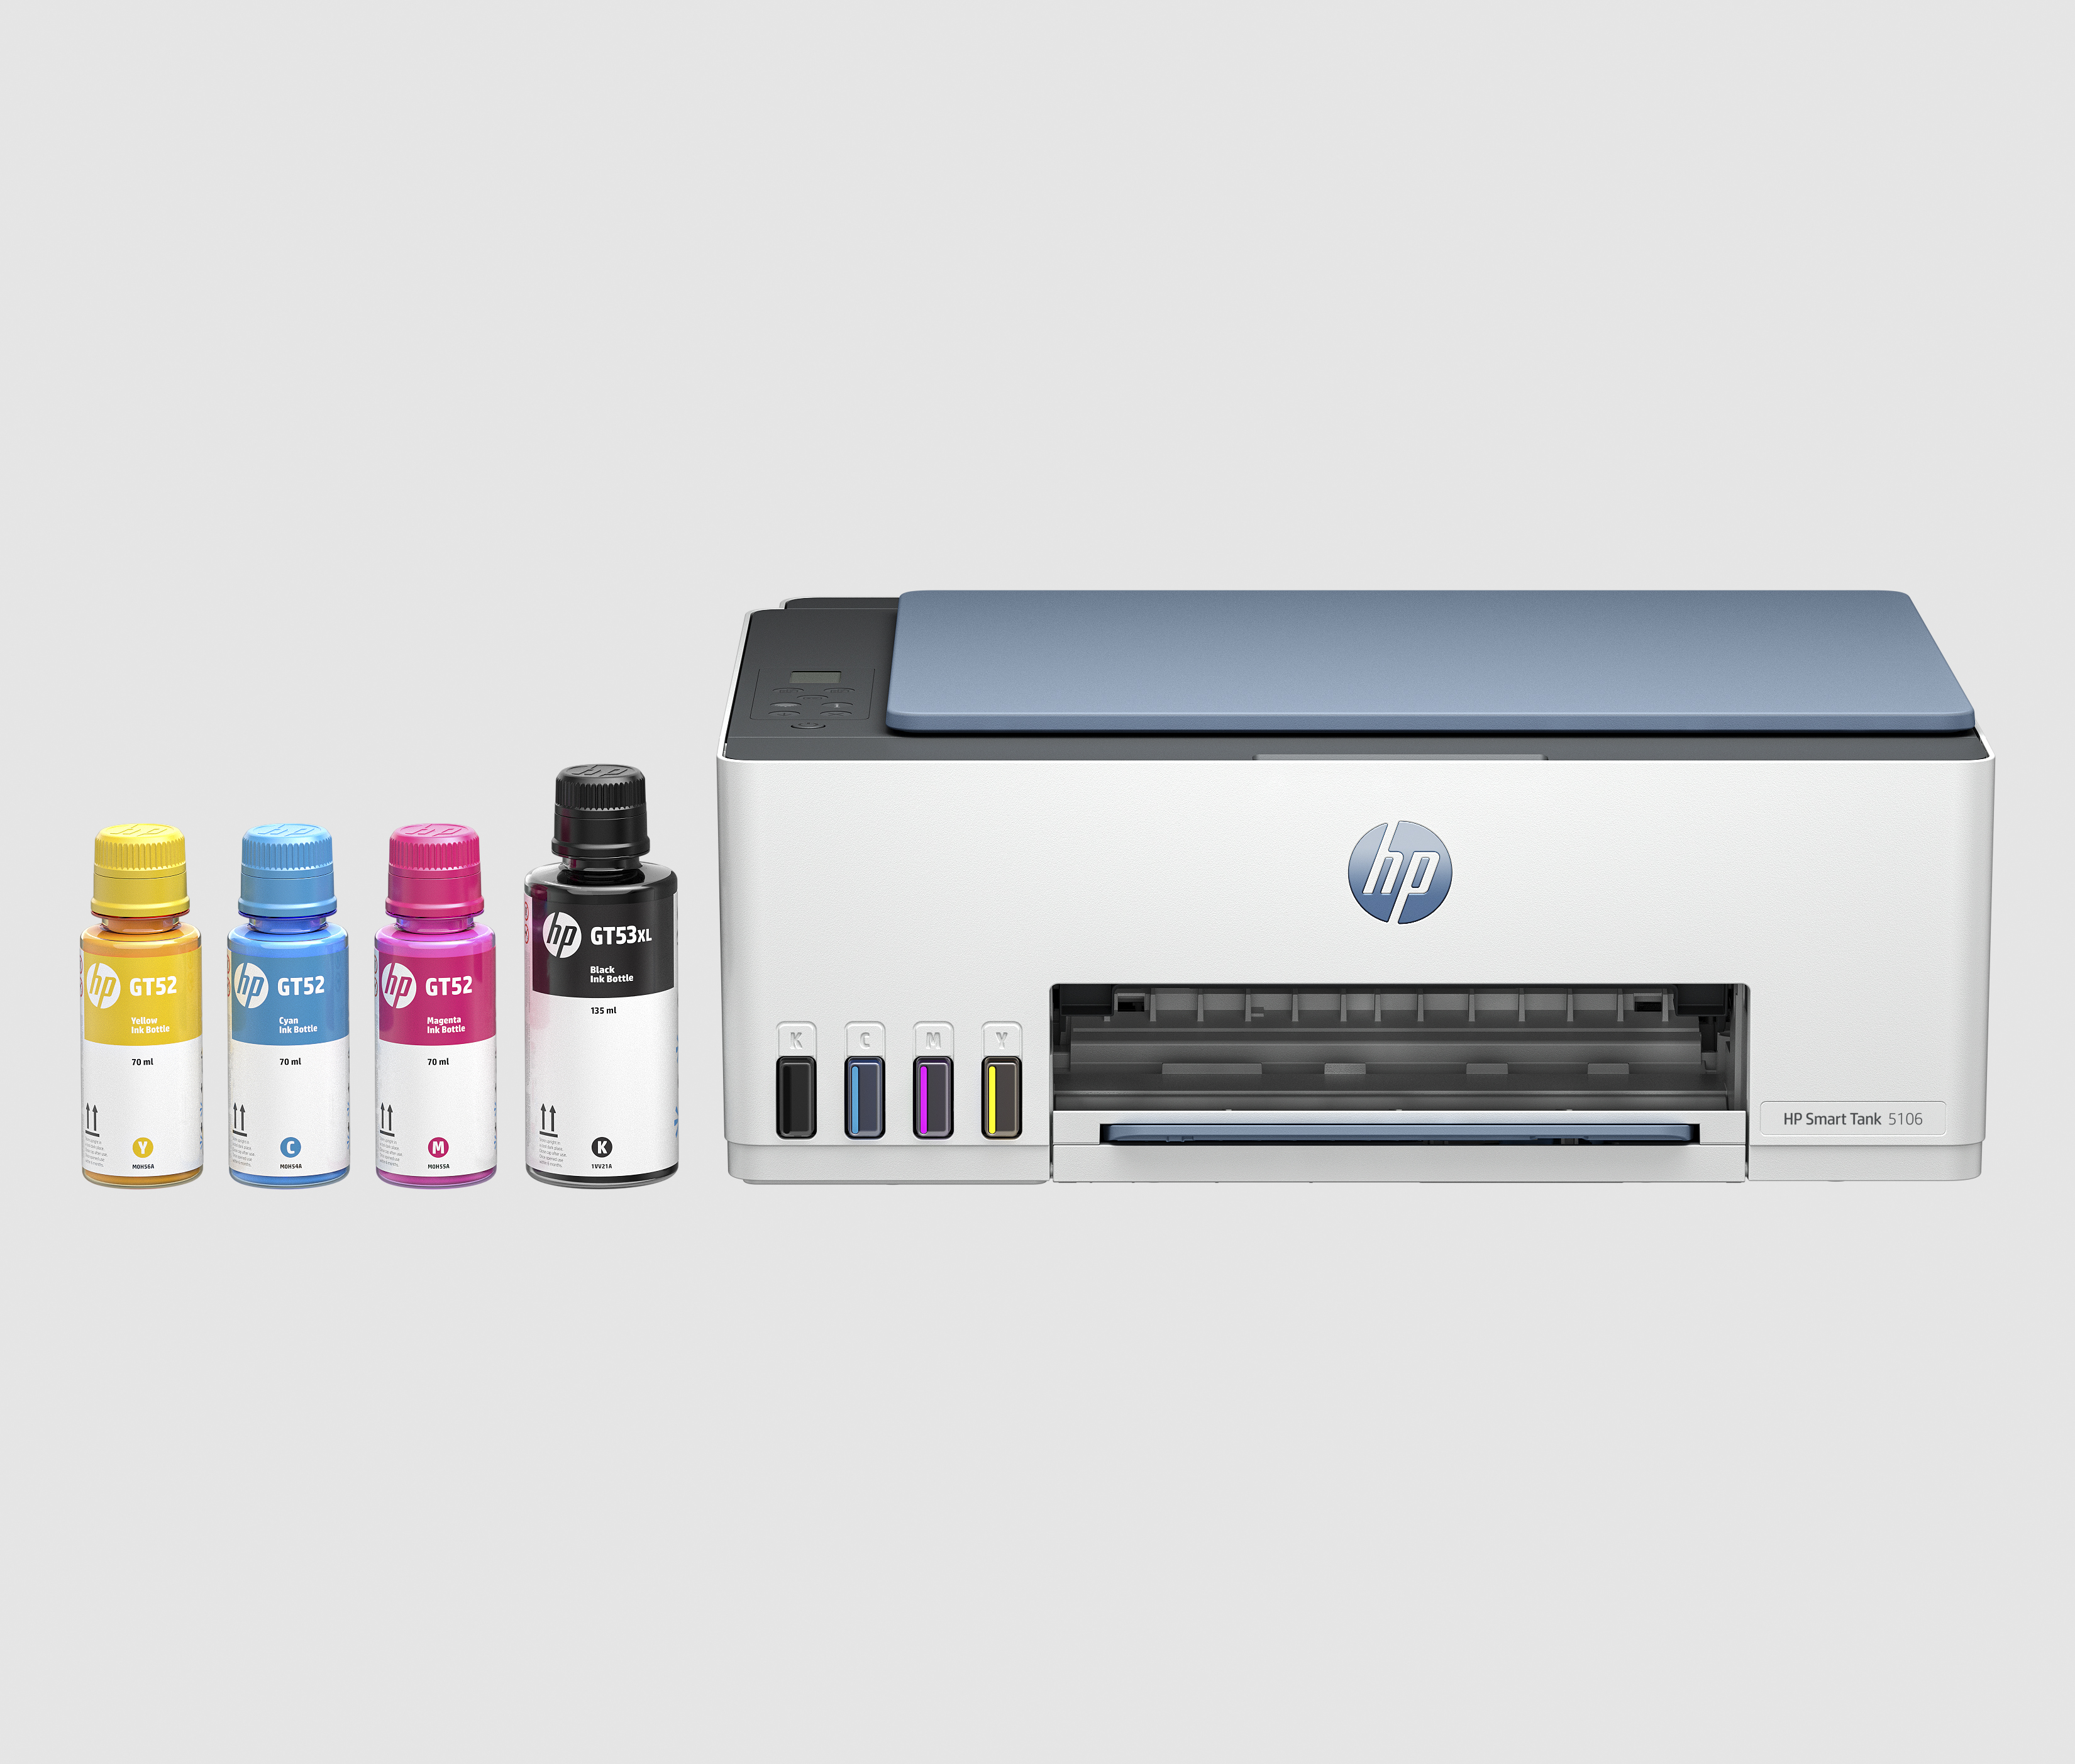 HP Smart Tank Imprimante Tout-en-un 5106, Couleur, Imprimante pour Maison et Bureau à domicile, Impression, copie, numérisation, Sans fil. Réservoir d’imprimante haute capacité. Impression depuis un téléphone ou une tablette. Numérisation vers PDF